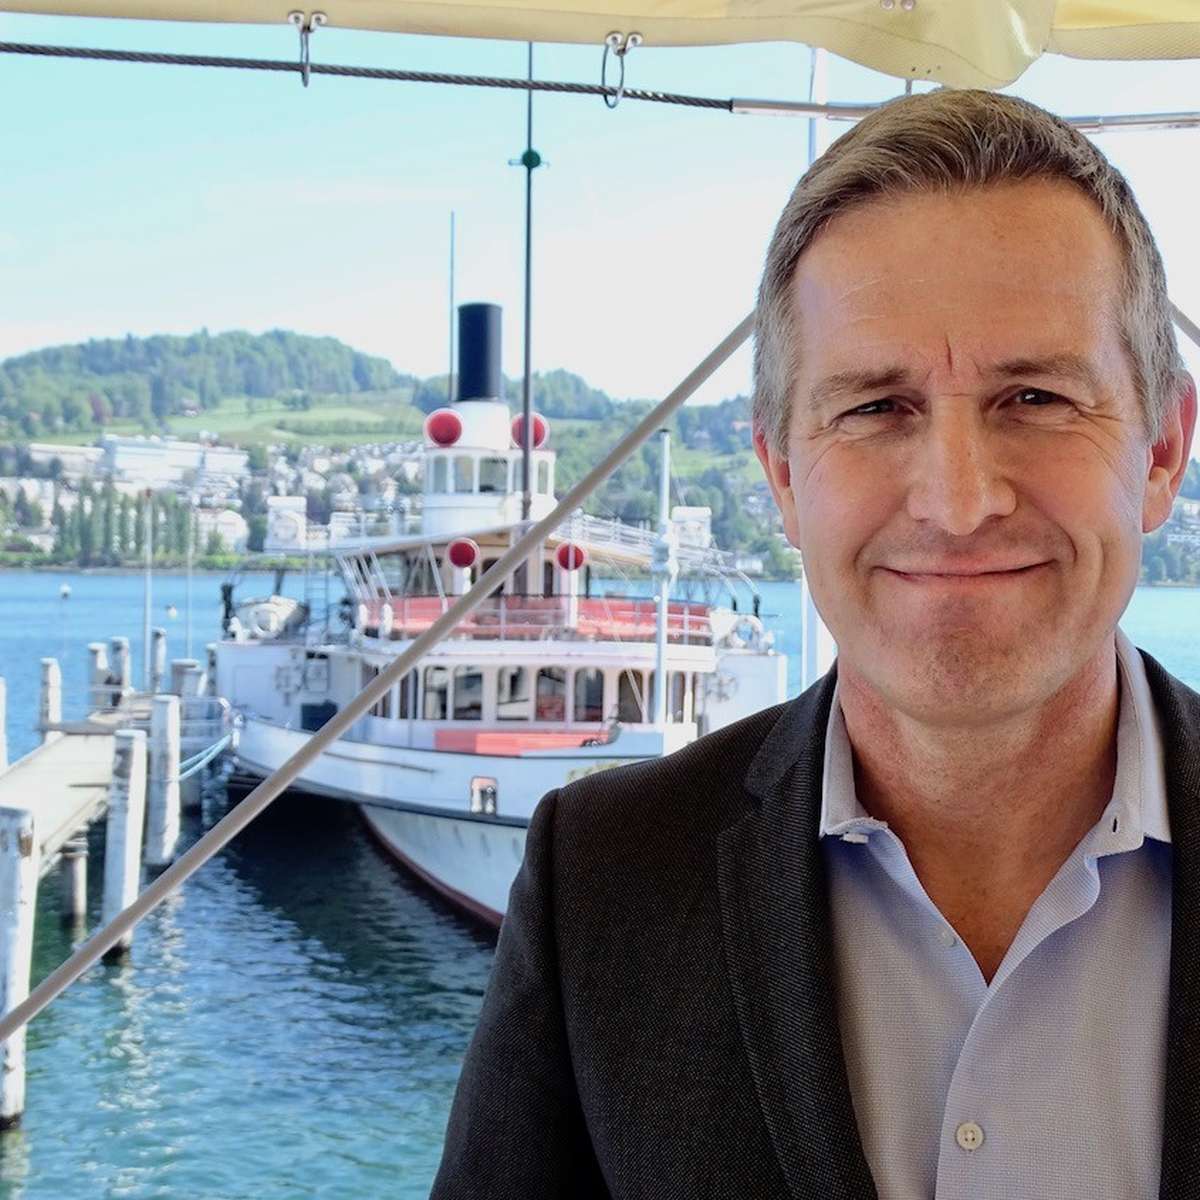 Wegen Unmut: Luzern verzichtet auf zusätzliches Touristenschiff